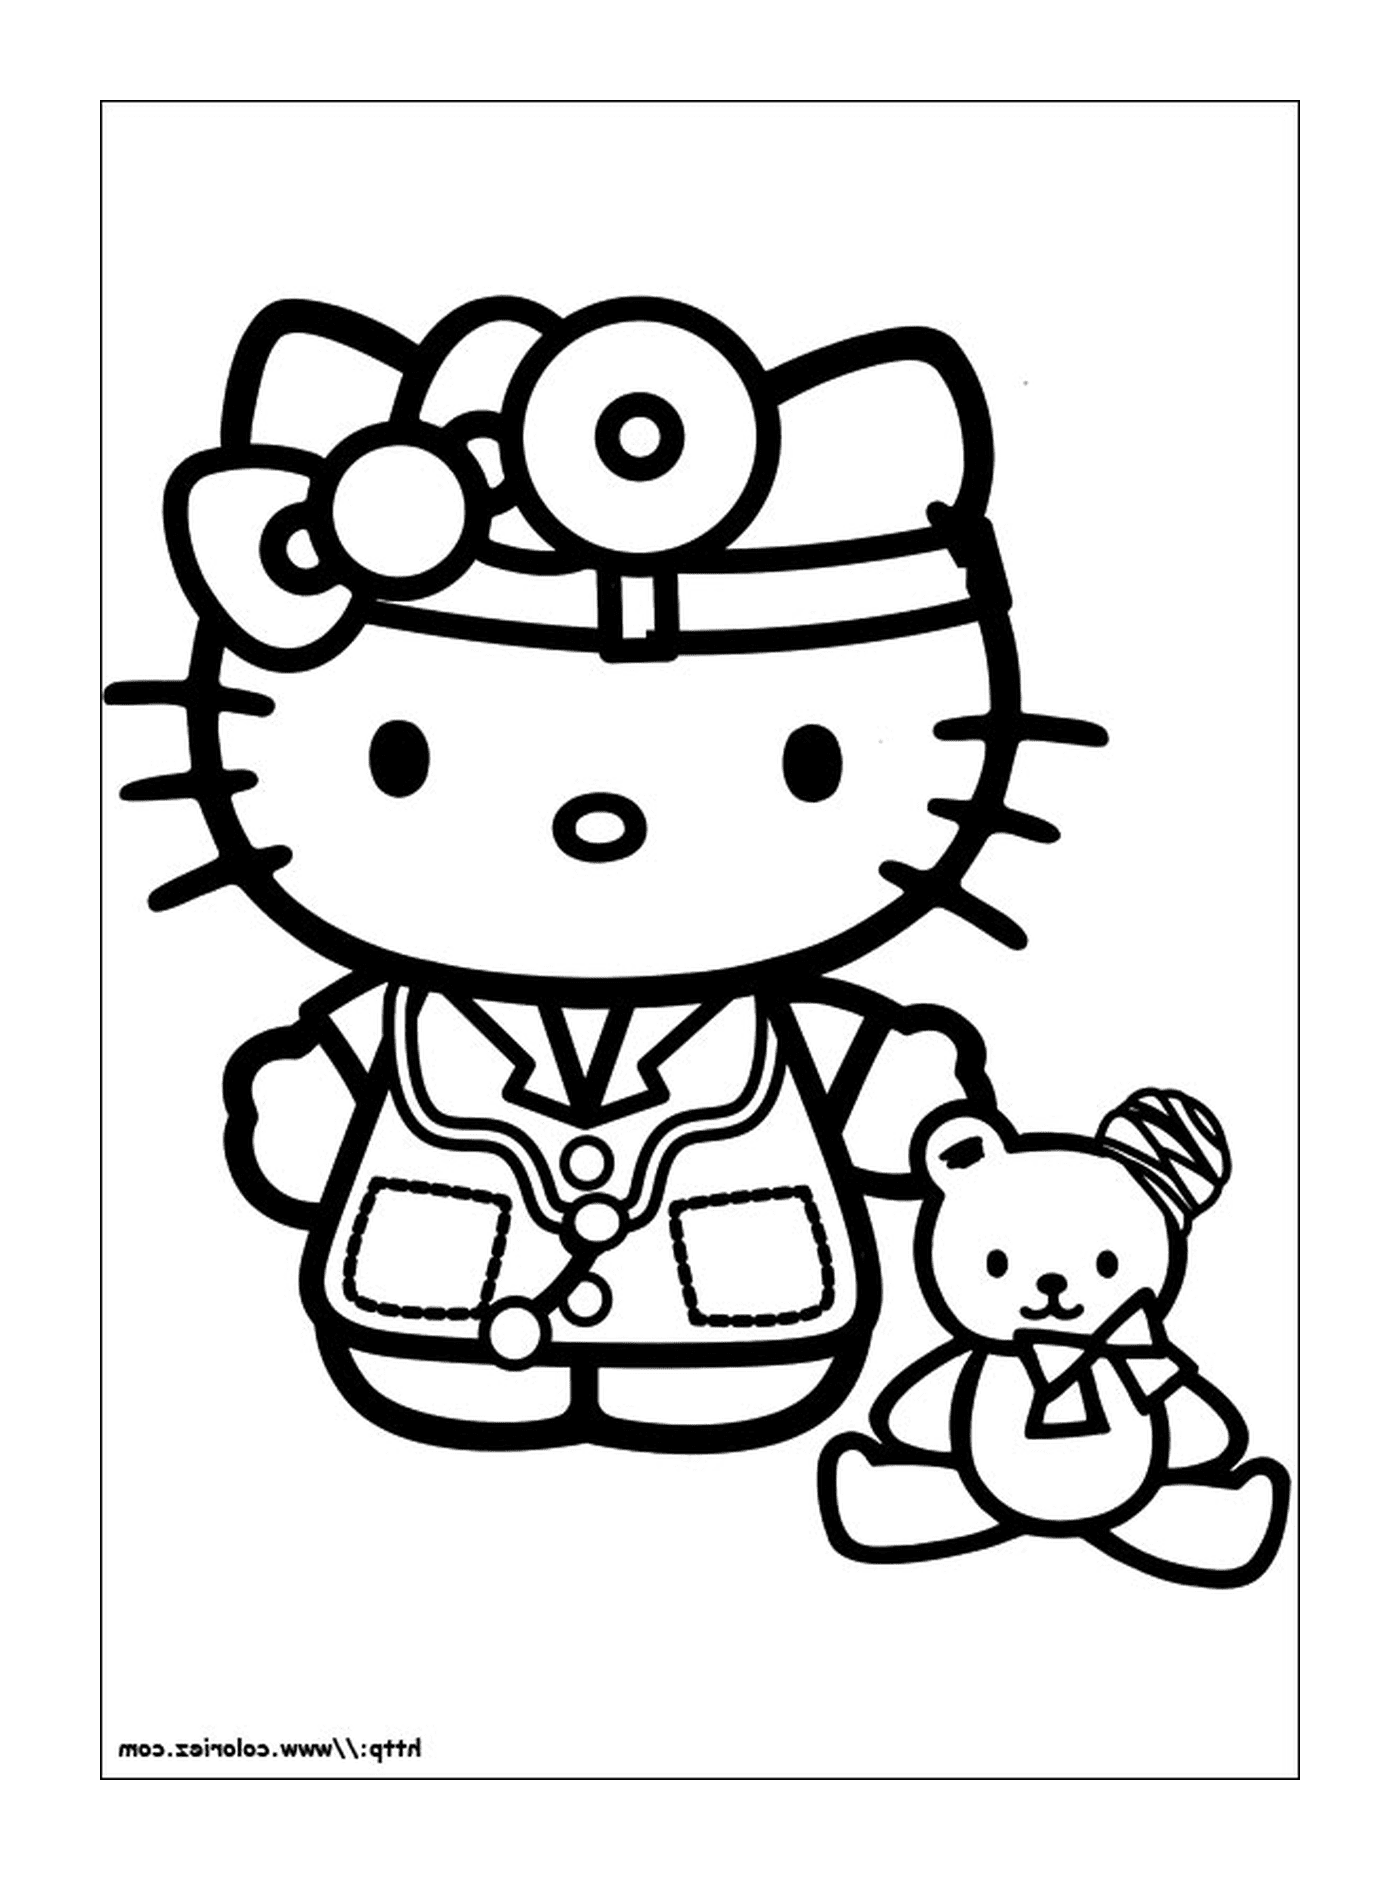  Enfermeira Hello Kitty com um ursinho de pelúcia 